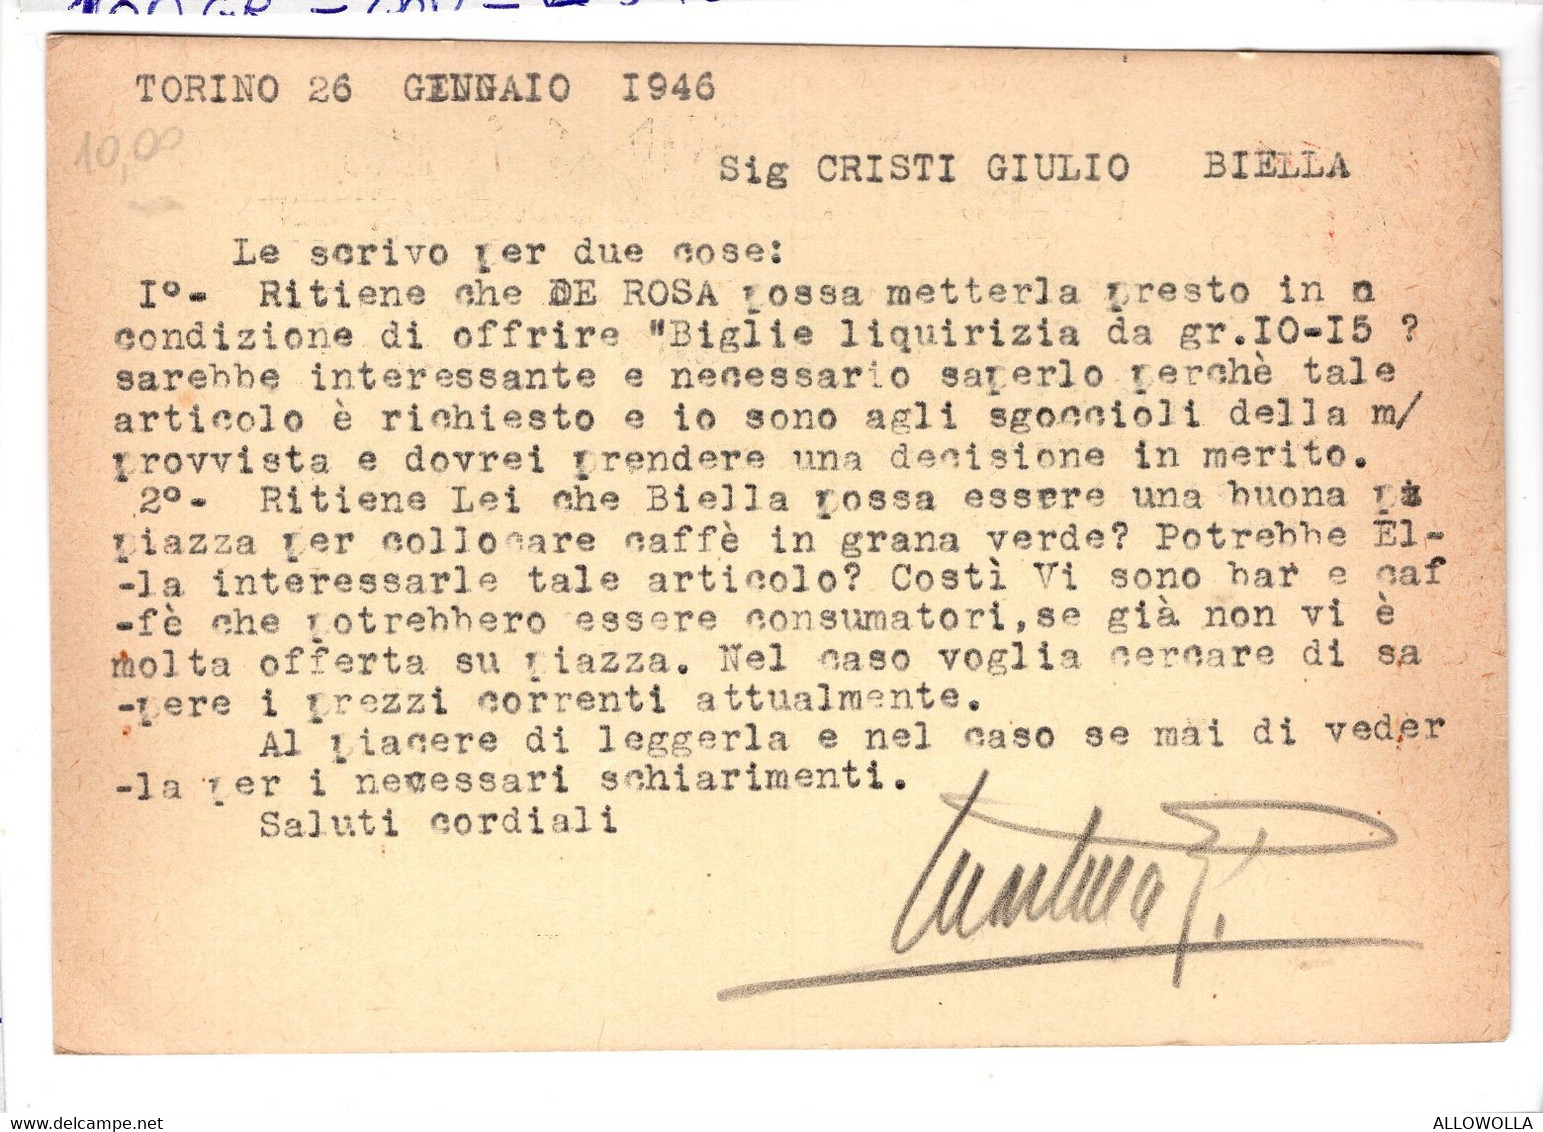 19564 " PRODOTTI LUMAR-CICCOLATO-CONFETTI CARAMELLE.....-TORINO "-CARTOLINA POSTALE NON SPEDITA - Marchands